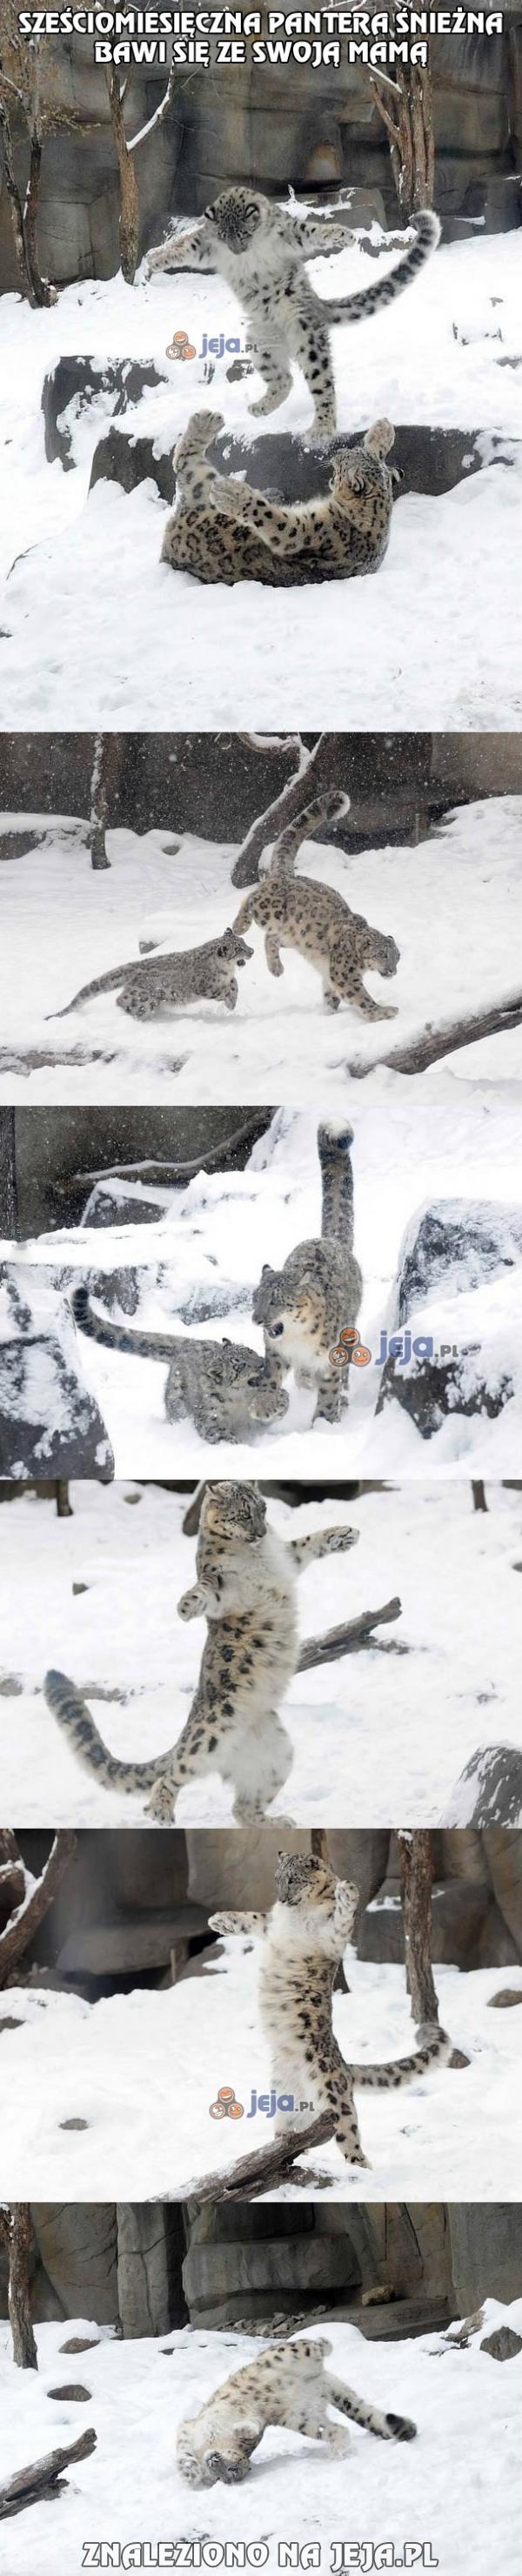 Duże koty lubią śnieg